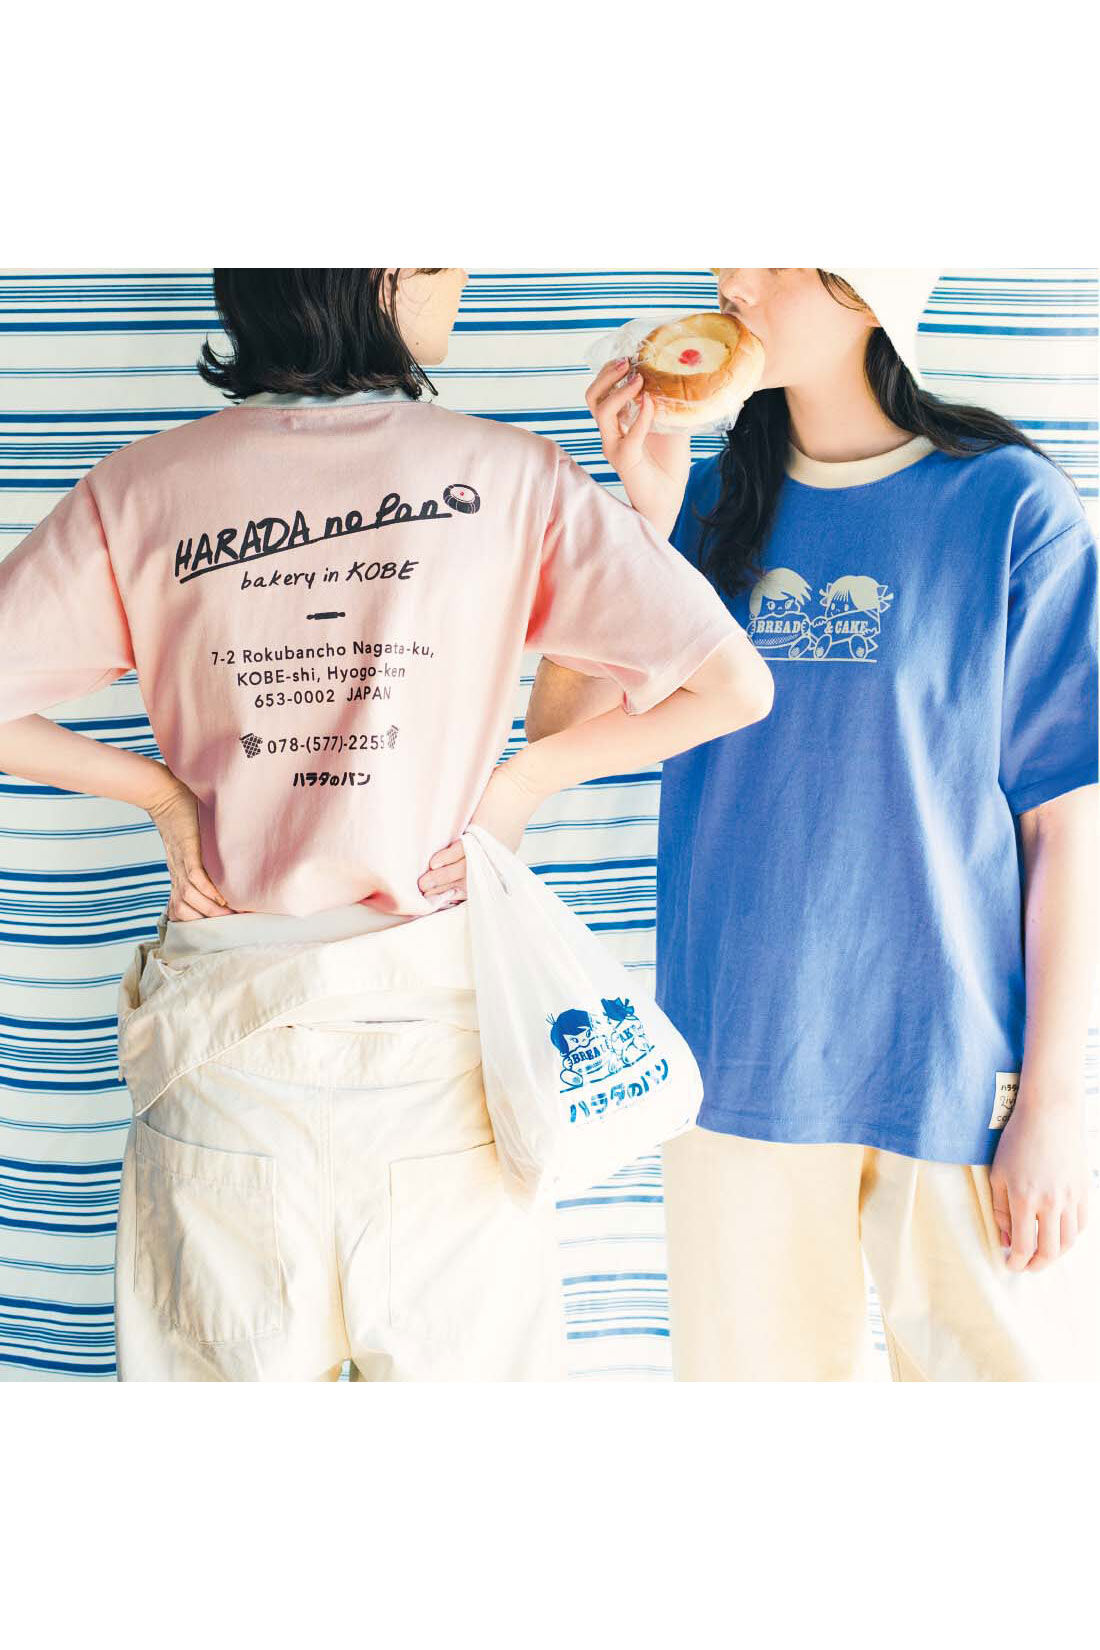 Real Stock|Live love cottonプロジェクト リブ イン コンフォート神戸のベーカリーハラダのパンさんとつくったオーガニックコットンのレトロかわいいTシャツ〈ベビーピンク〉